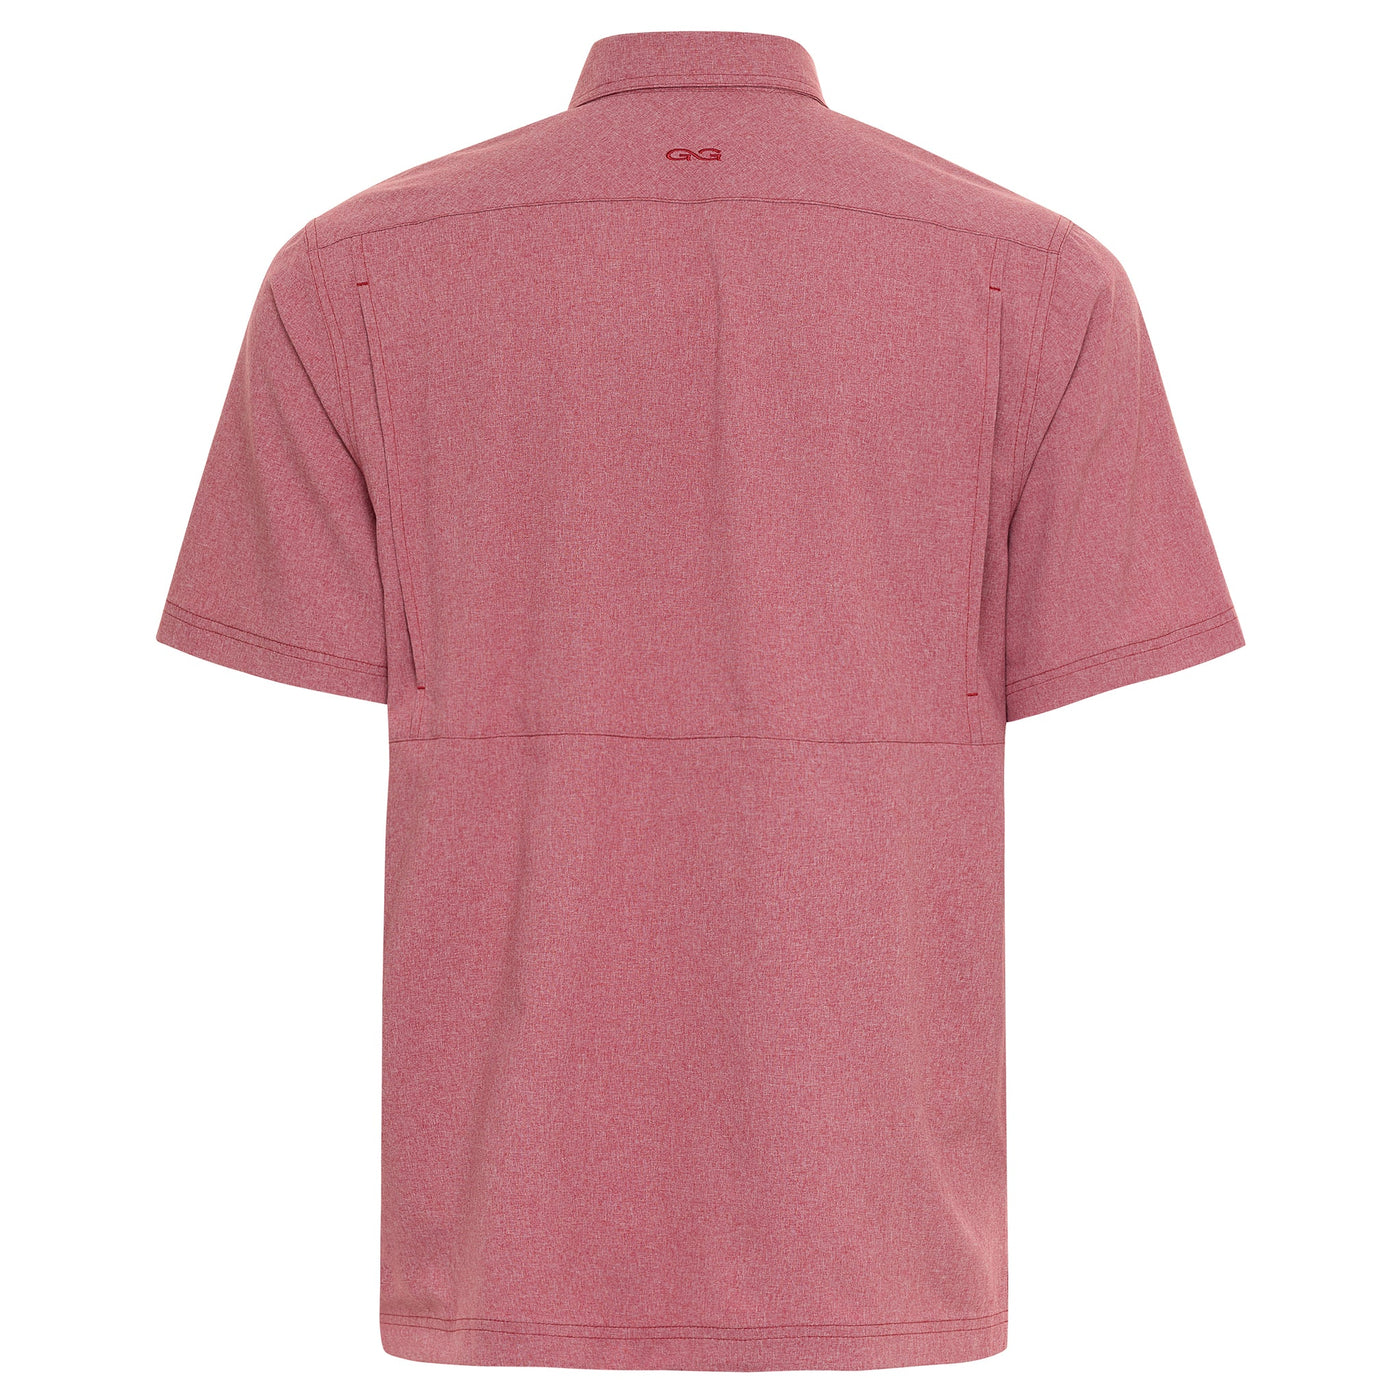 GameGuard Crimson MicroTek Shirt